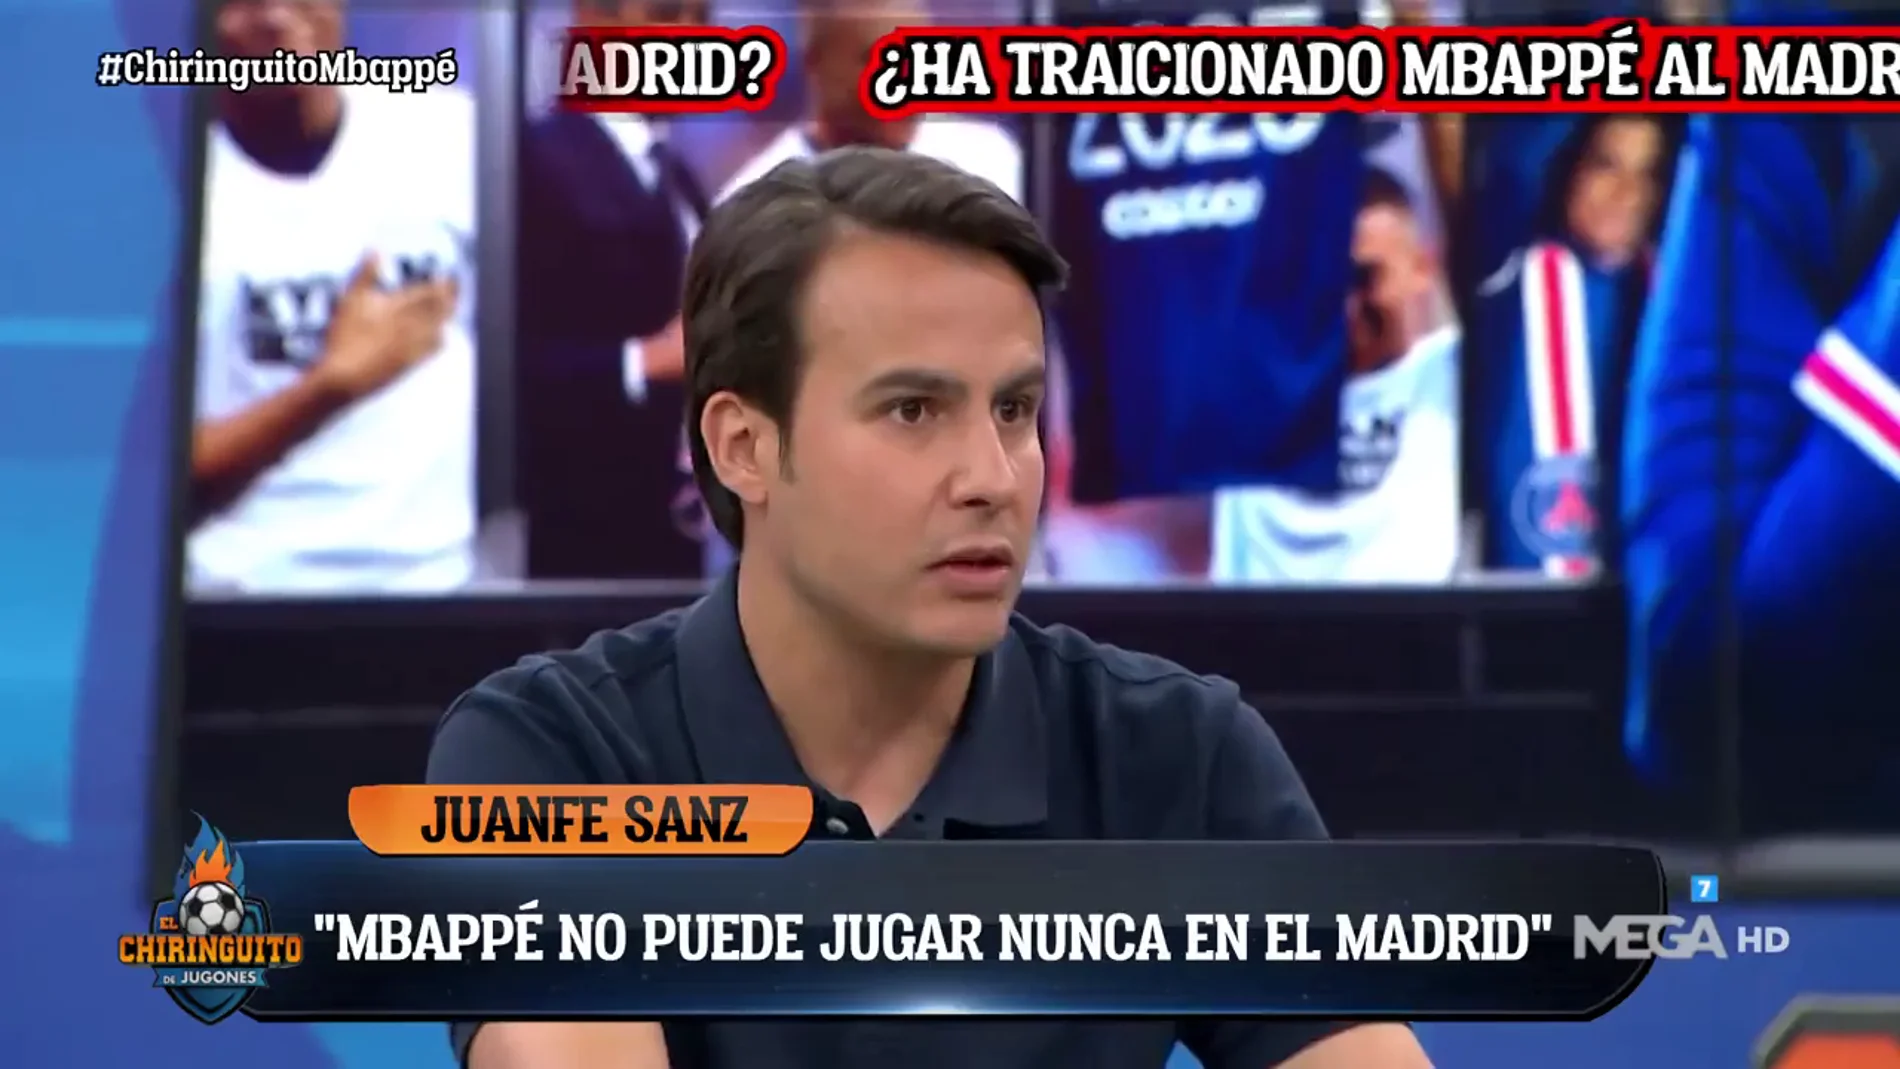 Juanfe Sanz: "Mbappé no puede jugar nunca en el Real Madrid"